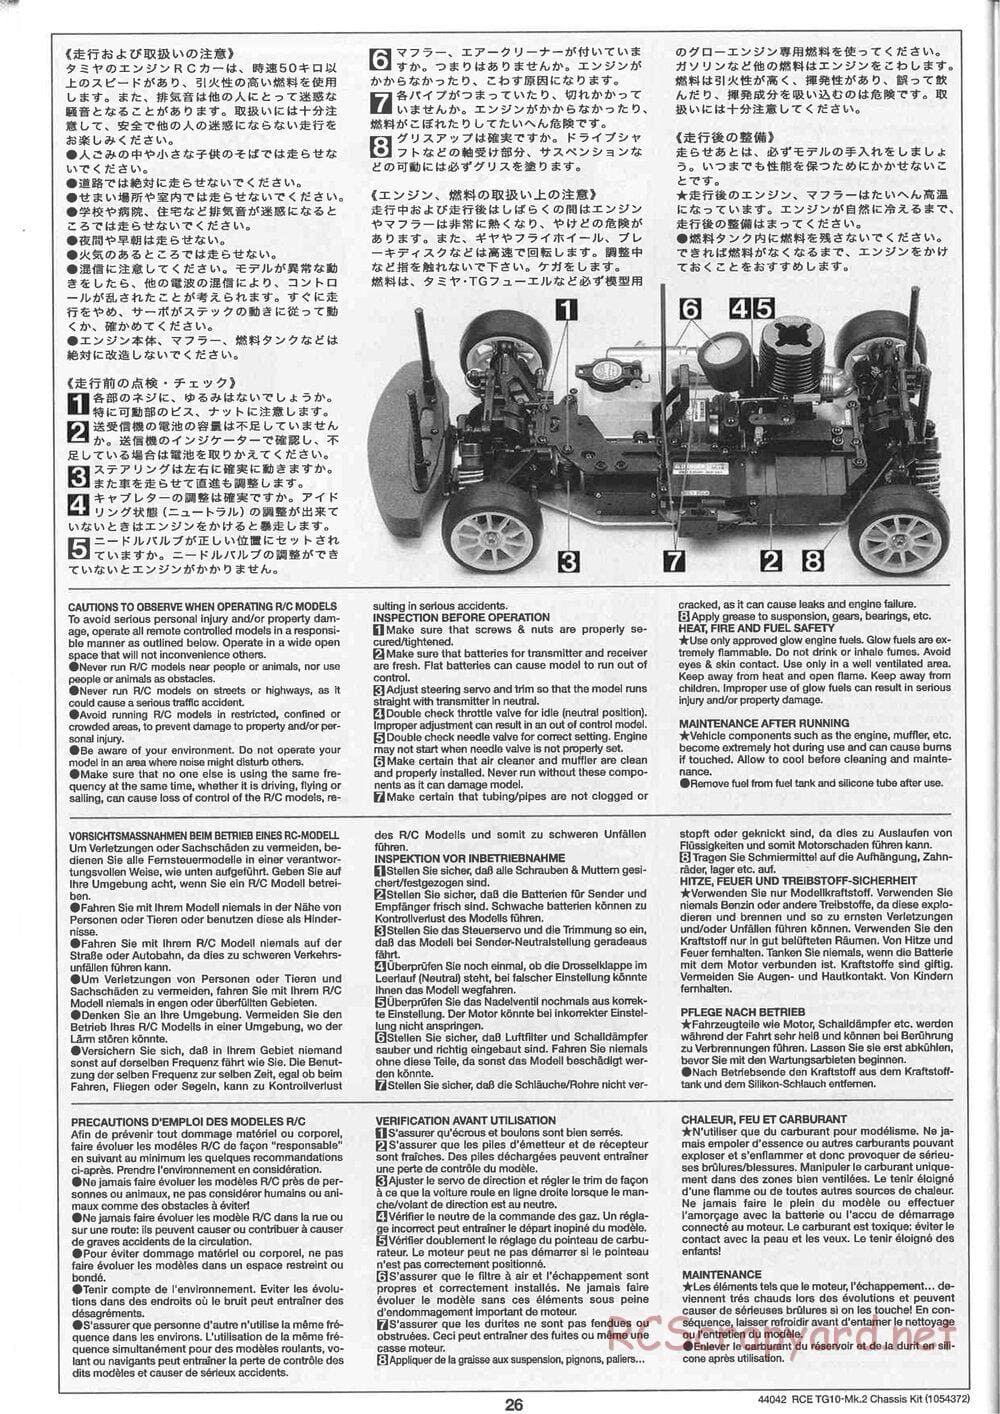 Tamiya - TG10 Mk.2 Chassis - Manual - Page 26